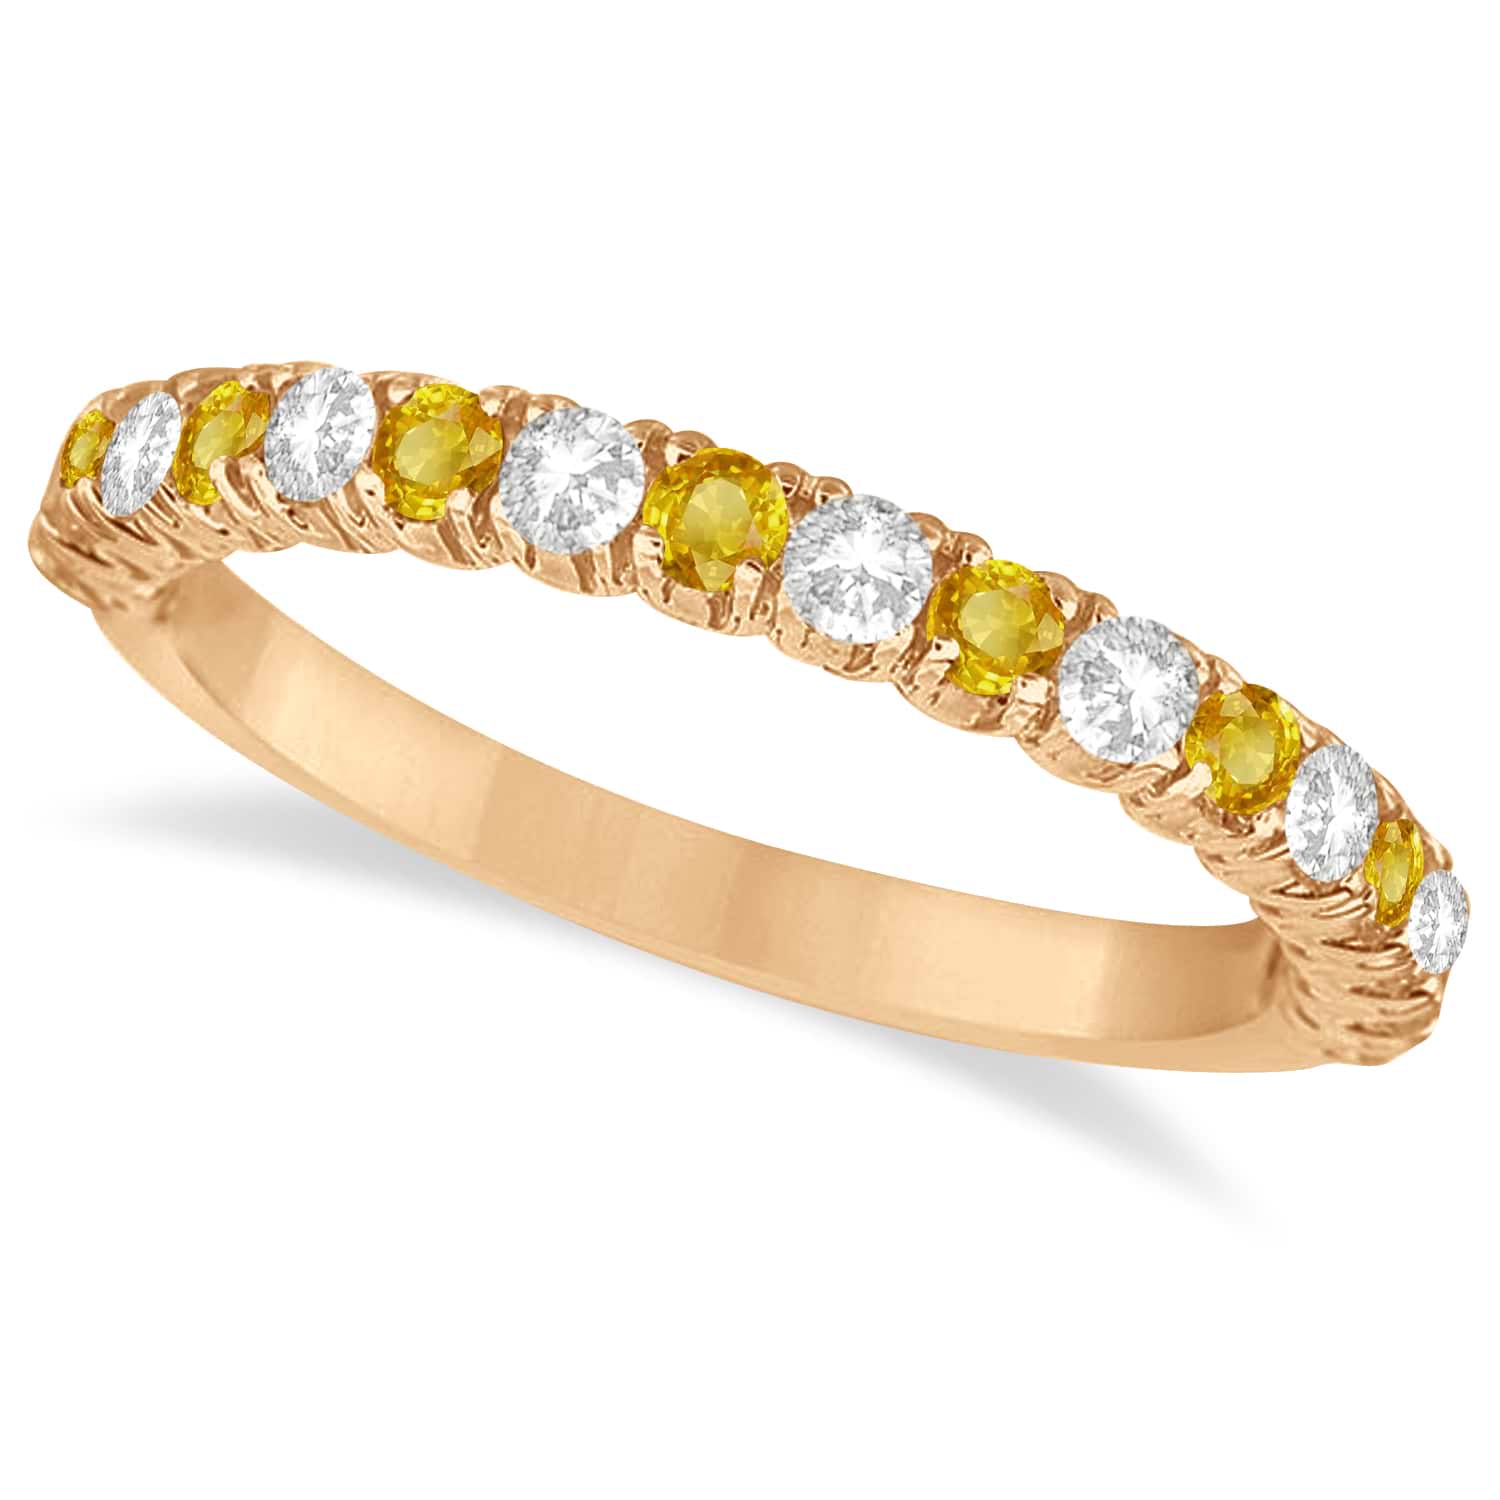 Yellow & White Diamond Wedding Band Anniversary Ring in 14k Rose Gold (0.75ct)